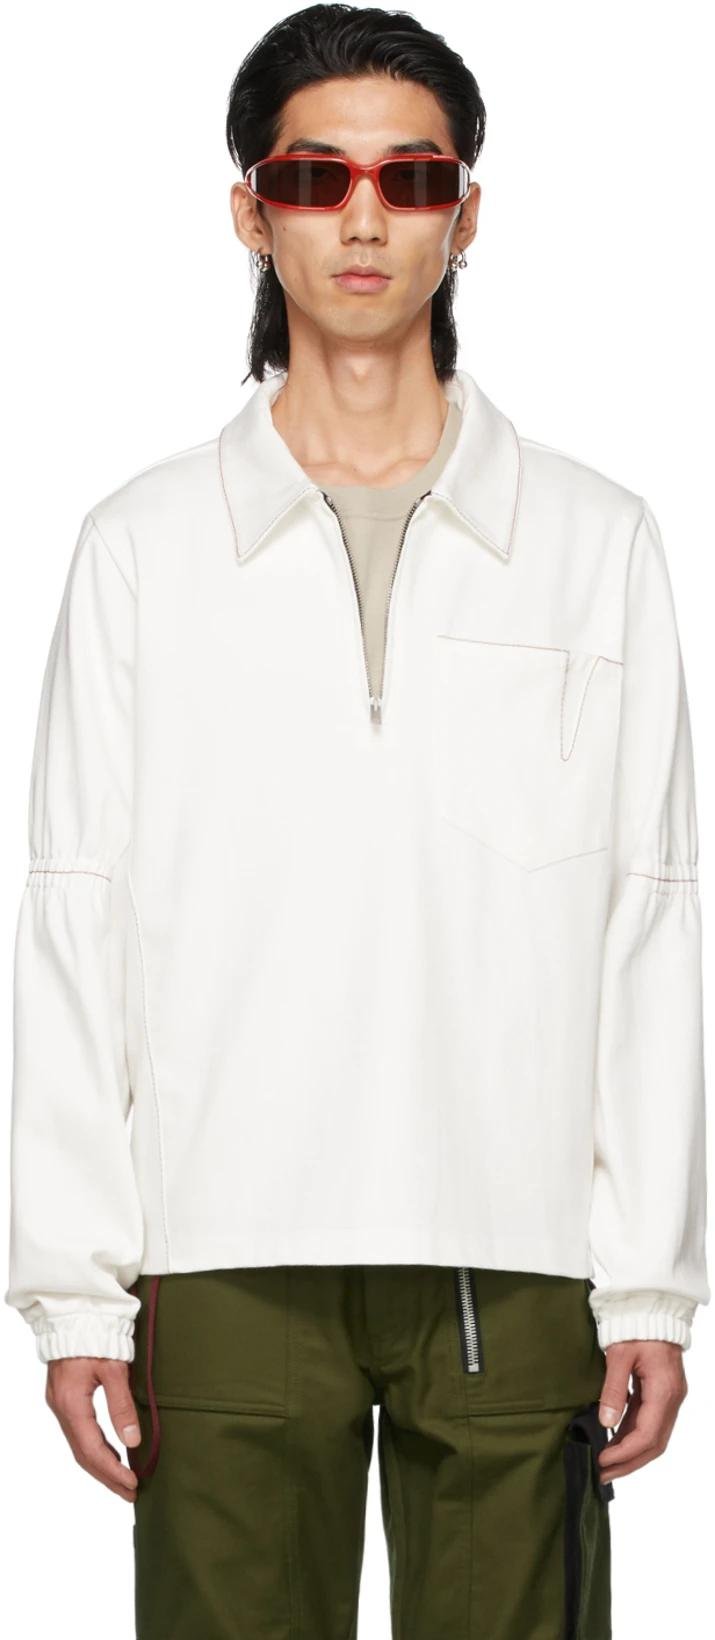 SSENSE Exclusive White Denim Zip-Up Pullover by ADYAR